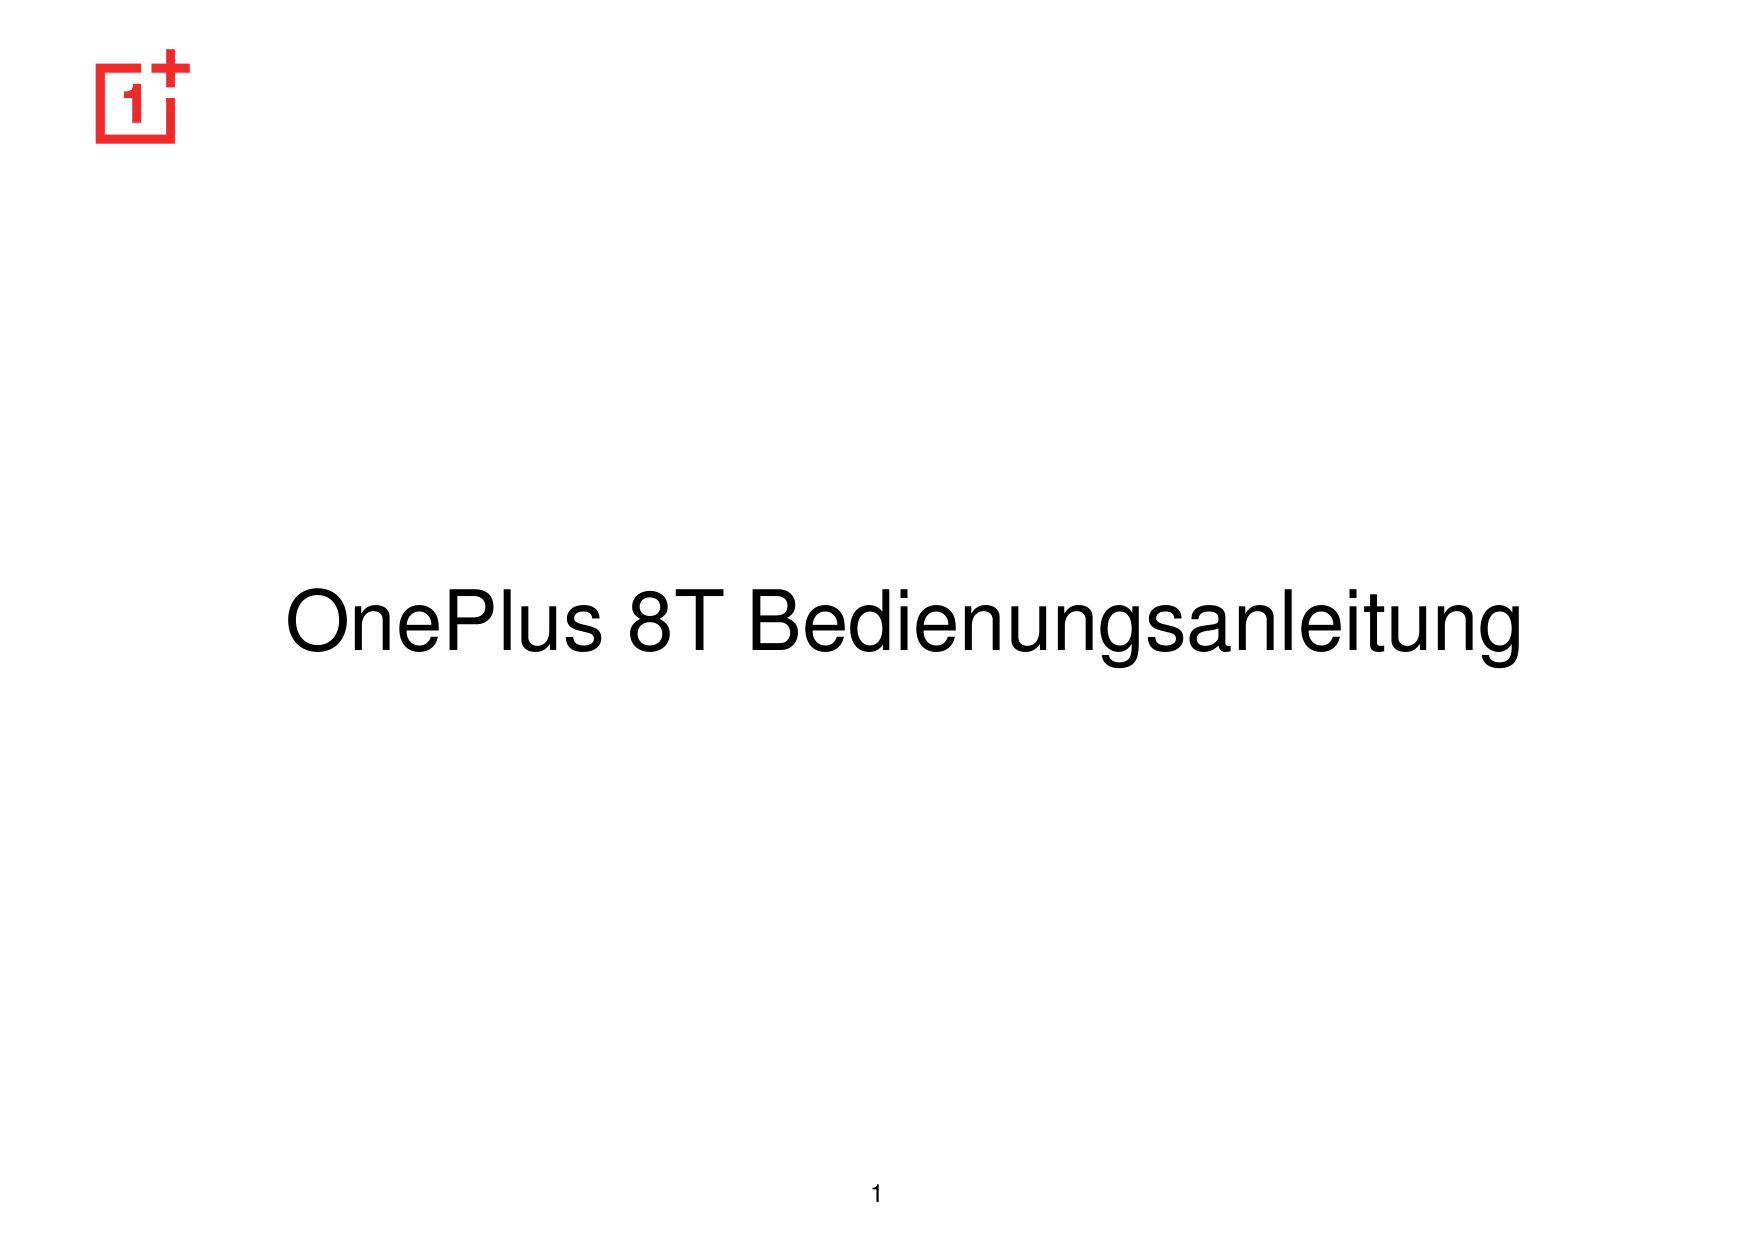 OnePlus 8T Bedienungsanleitung1